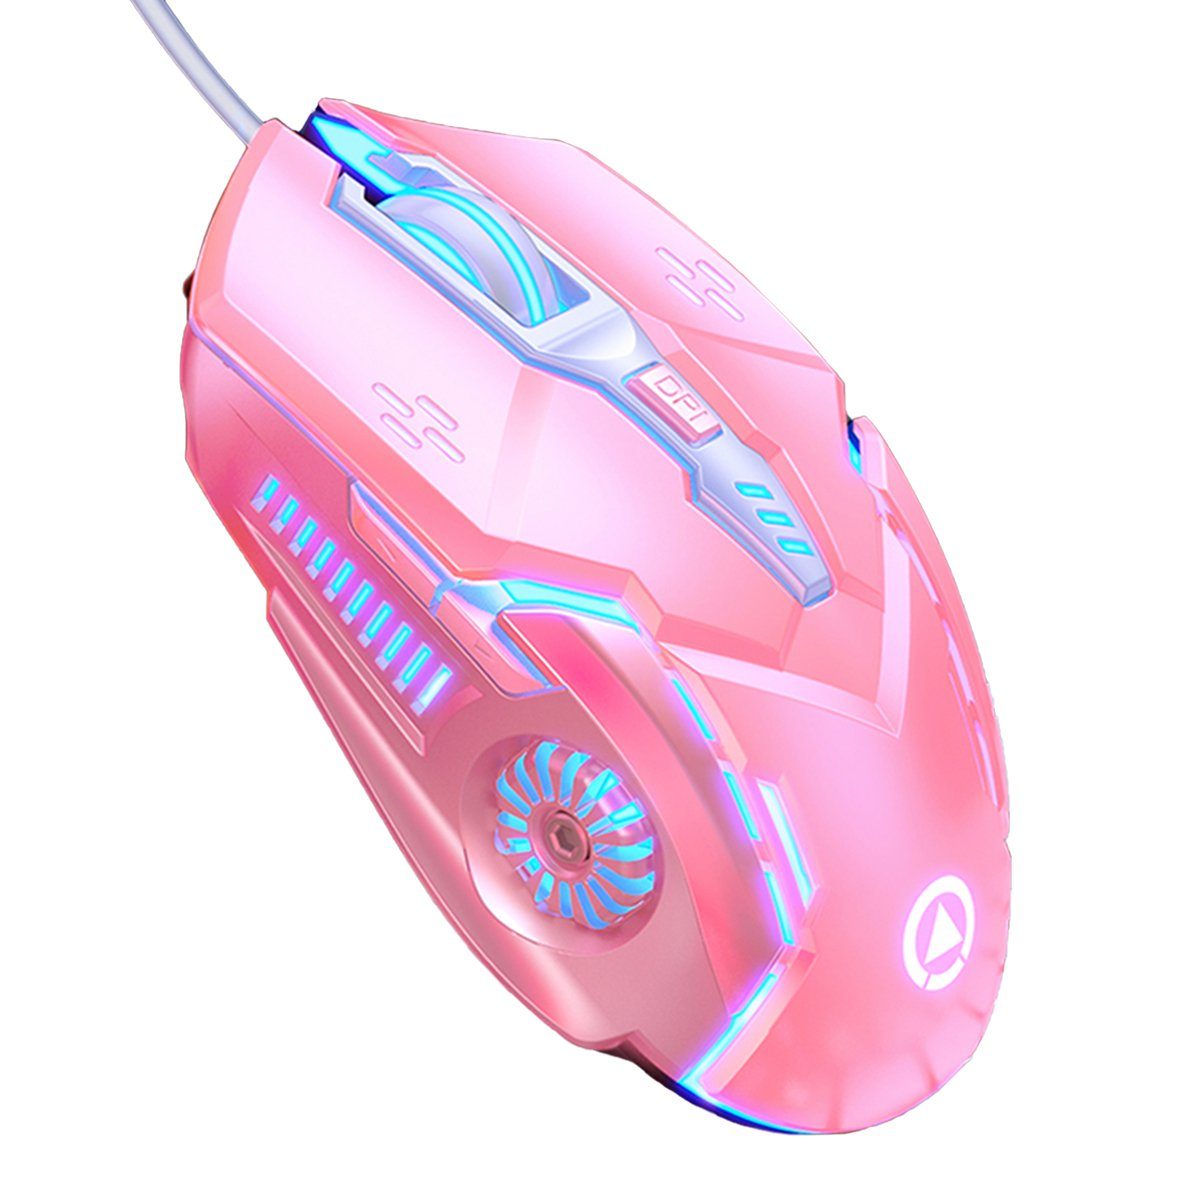 Diida Gaming-Maus, mechanische Maus, kabelgebundene Maus, 6-Tasten Gaming-Maus (7-farbig beleuchtete mechanische Gaming-Maus, stumm/stumm)